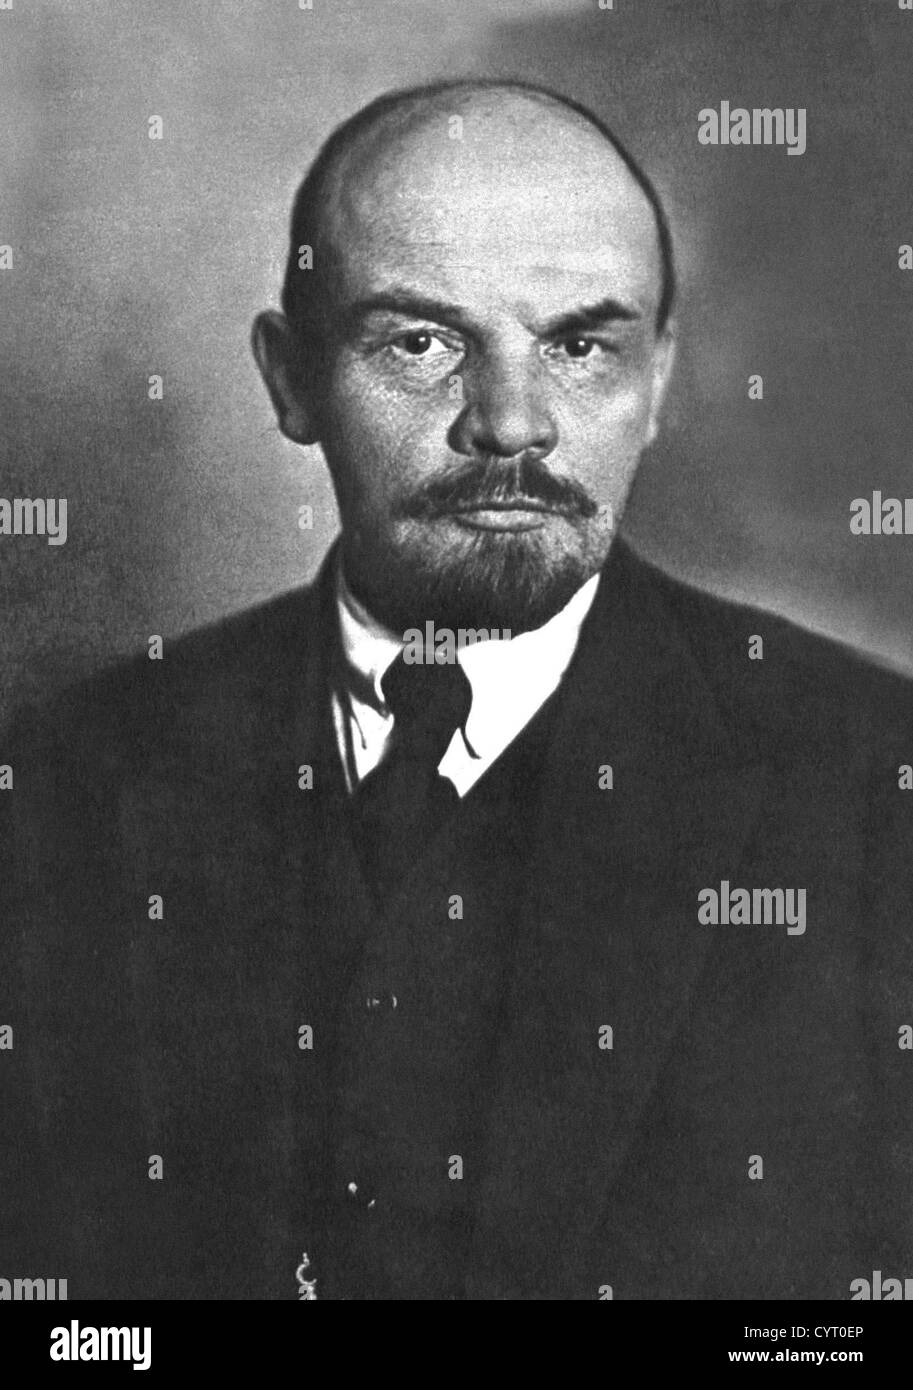 Vladimir Ilyich Lenin war ein russischer kommunistischer Revolutionär, Politiker und politischer Theoretiker, der als der Führer der russischen SFSR von 1917, diente dann gleichzeitig als Premier der Sowjetunion von 1922 bis 1924. Aus den Archiven der Presse Portrait Service früher Pressebüro Portrait. Stockfoto